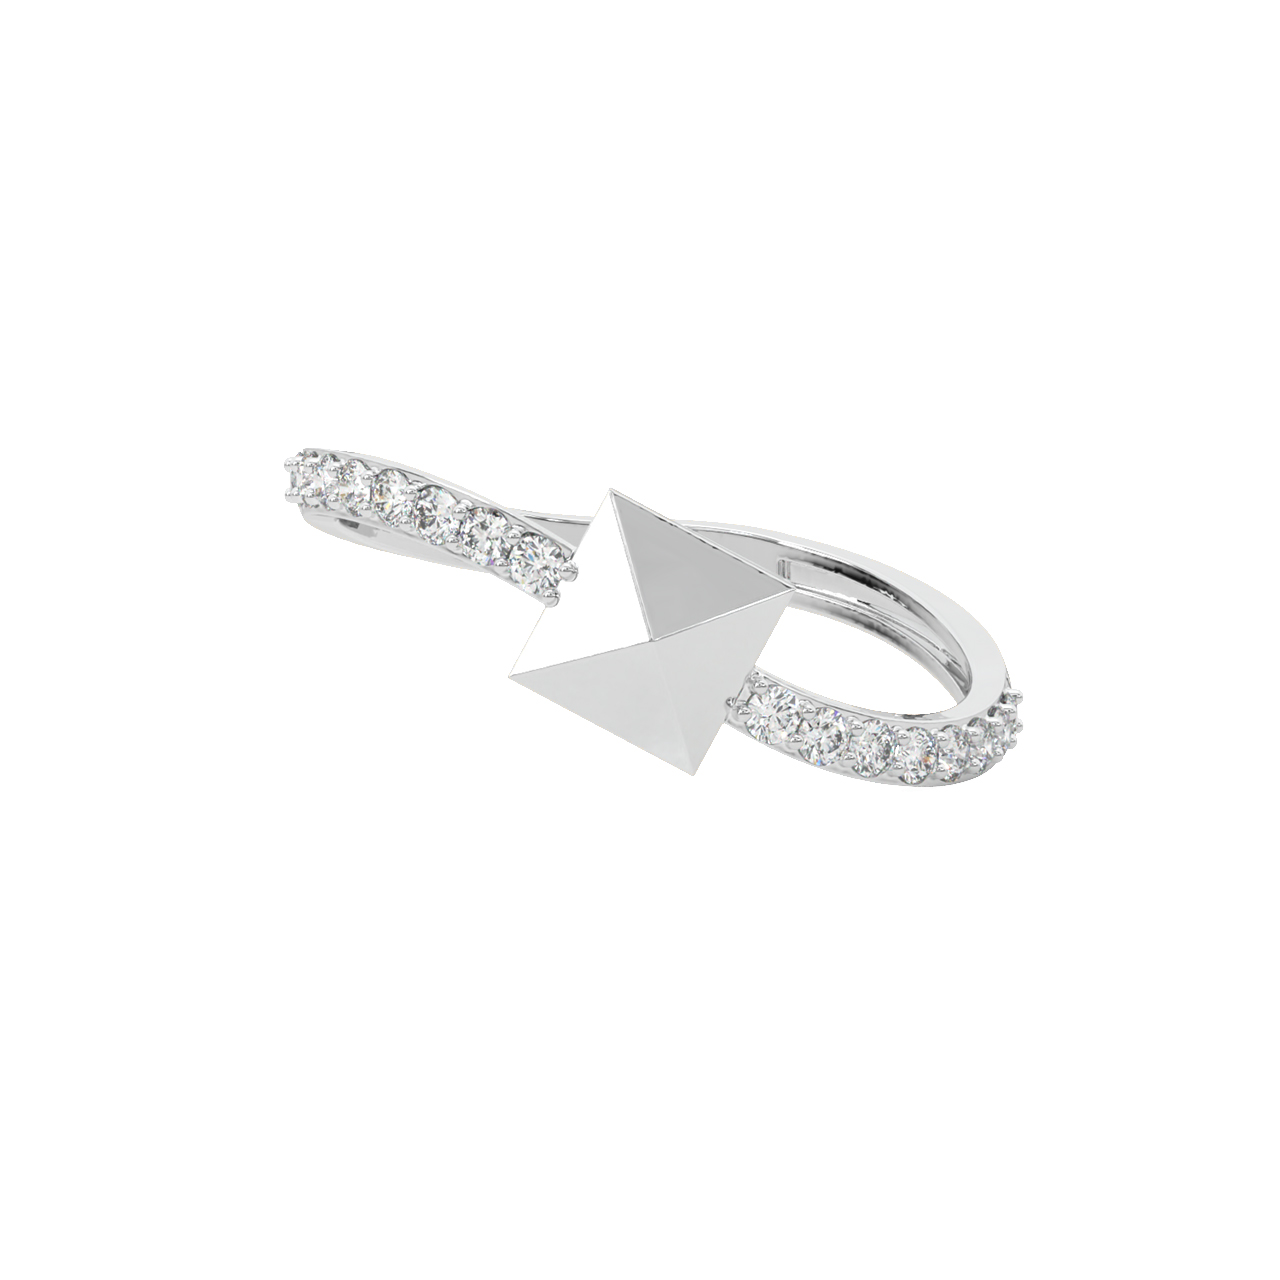 Paul Round Diamond Engagement Ring